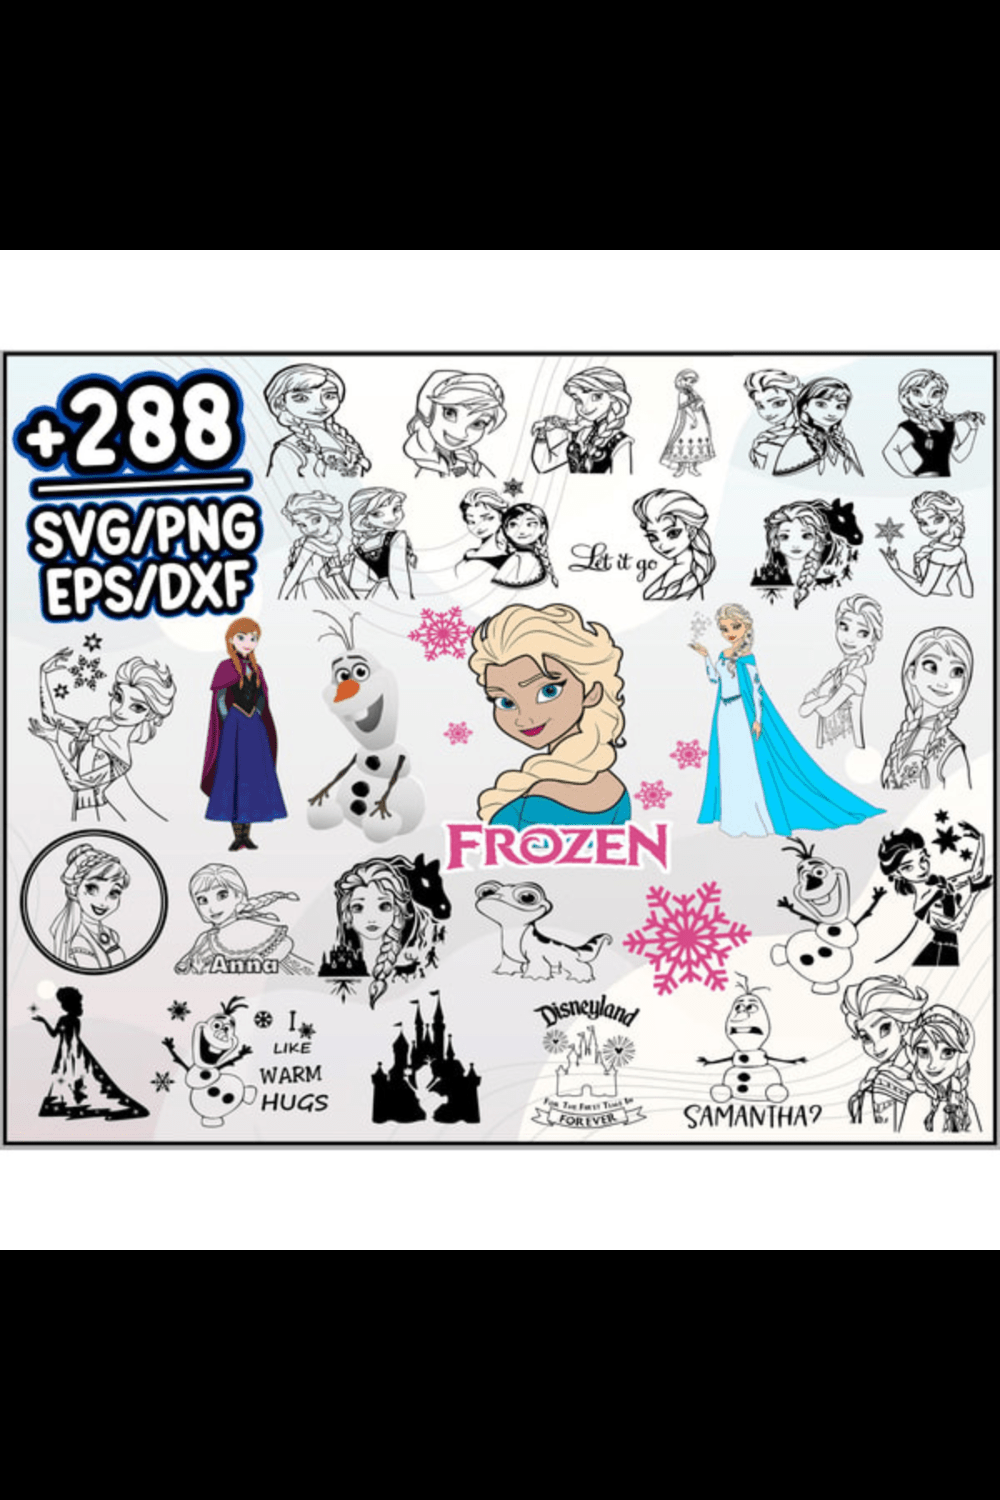 Frozen SVG, Frozen PNG, Frozen Logo, Frozen Clipart, Elsa PNG, Elsa Clipart, Olaf Clipart, Frozen Symbol, Elsa SV pinterest preview image.